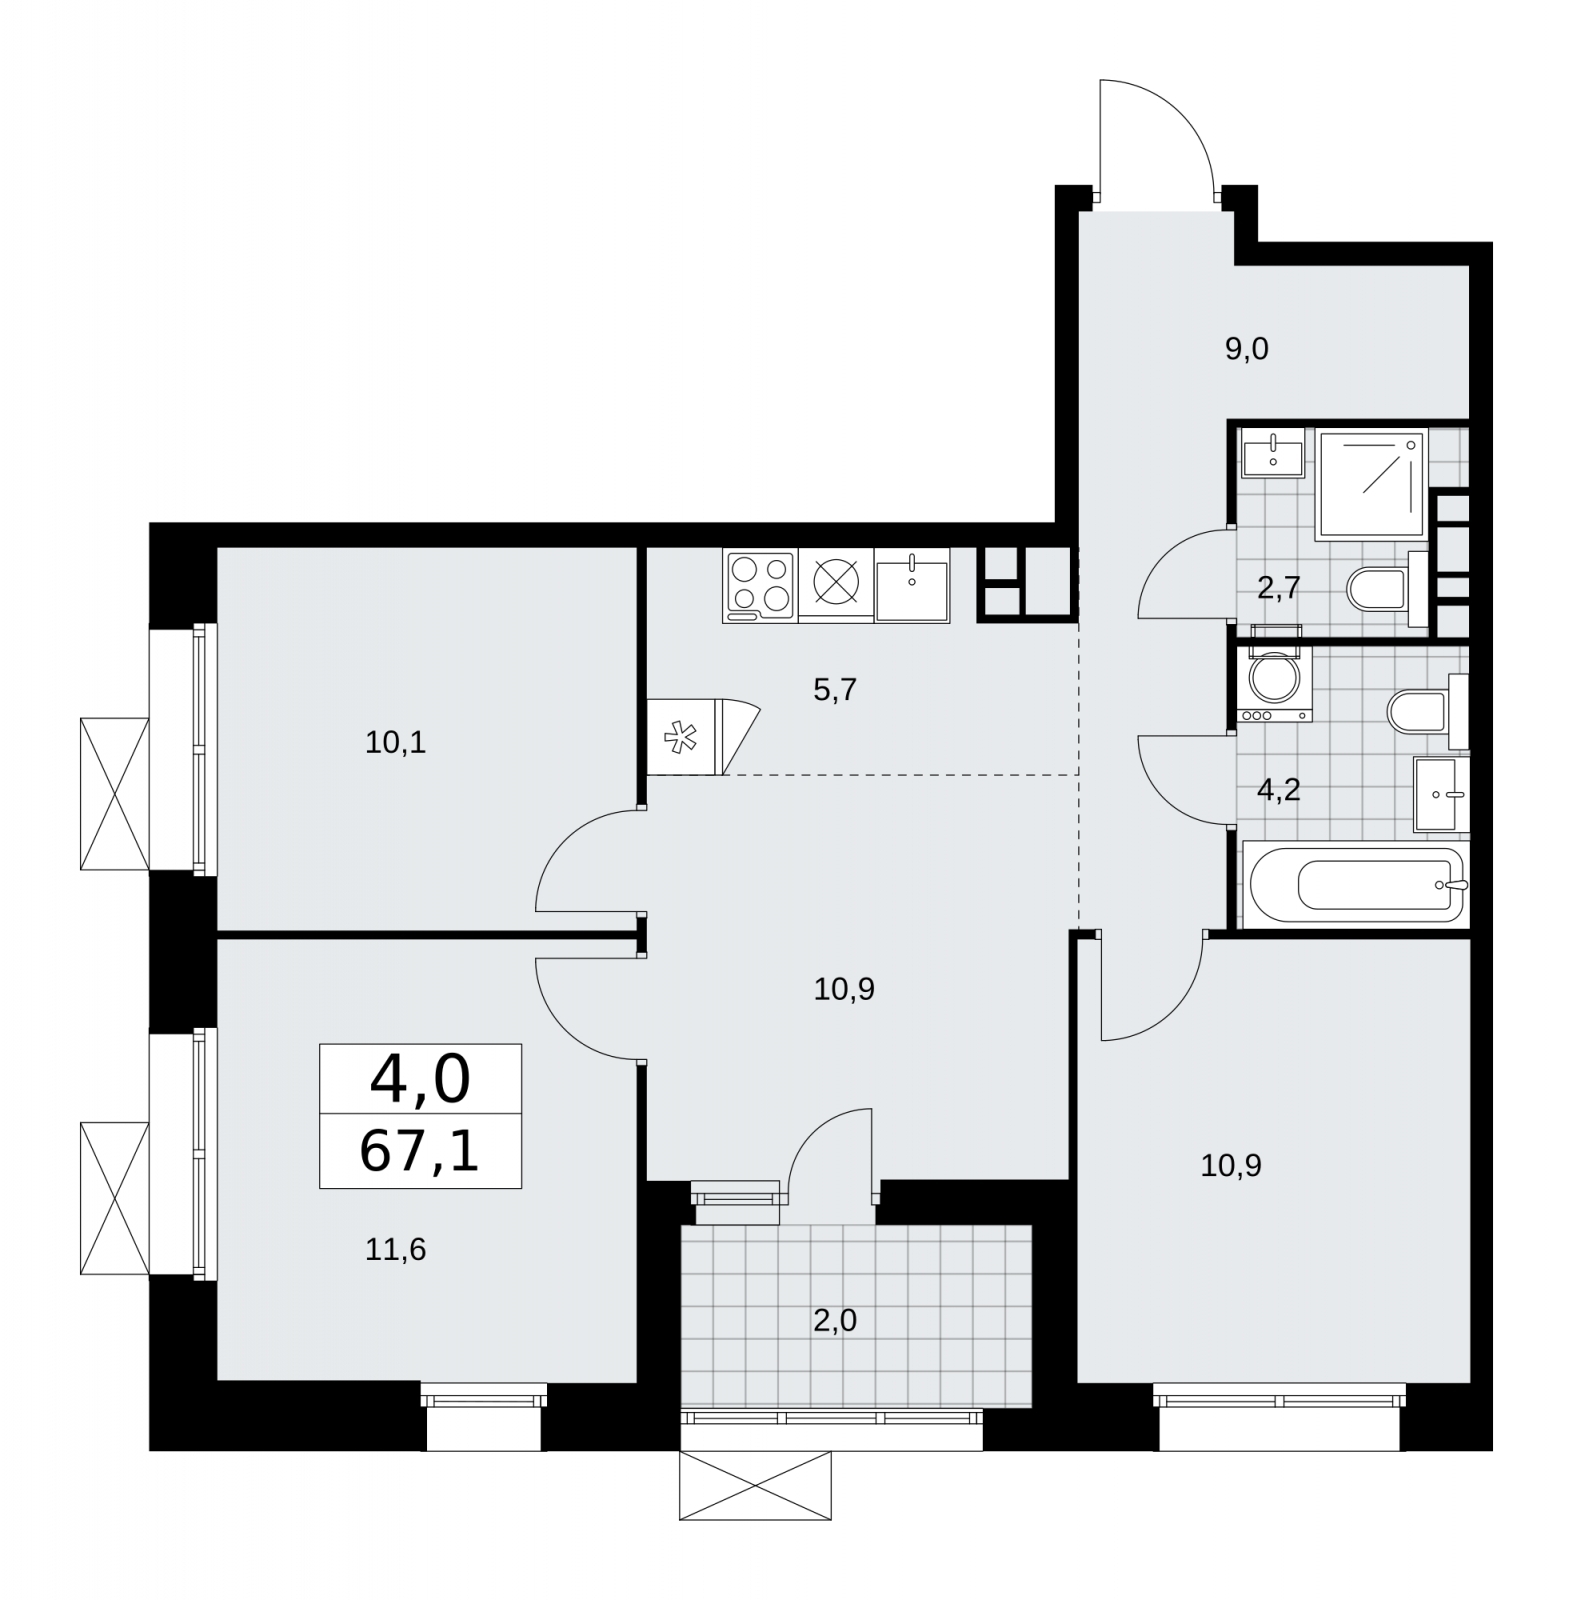 Продается 4-комнатная квартира с европланировкой с отделкой в новом жилом комплексе, рядом с метро